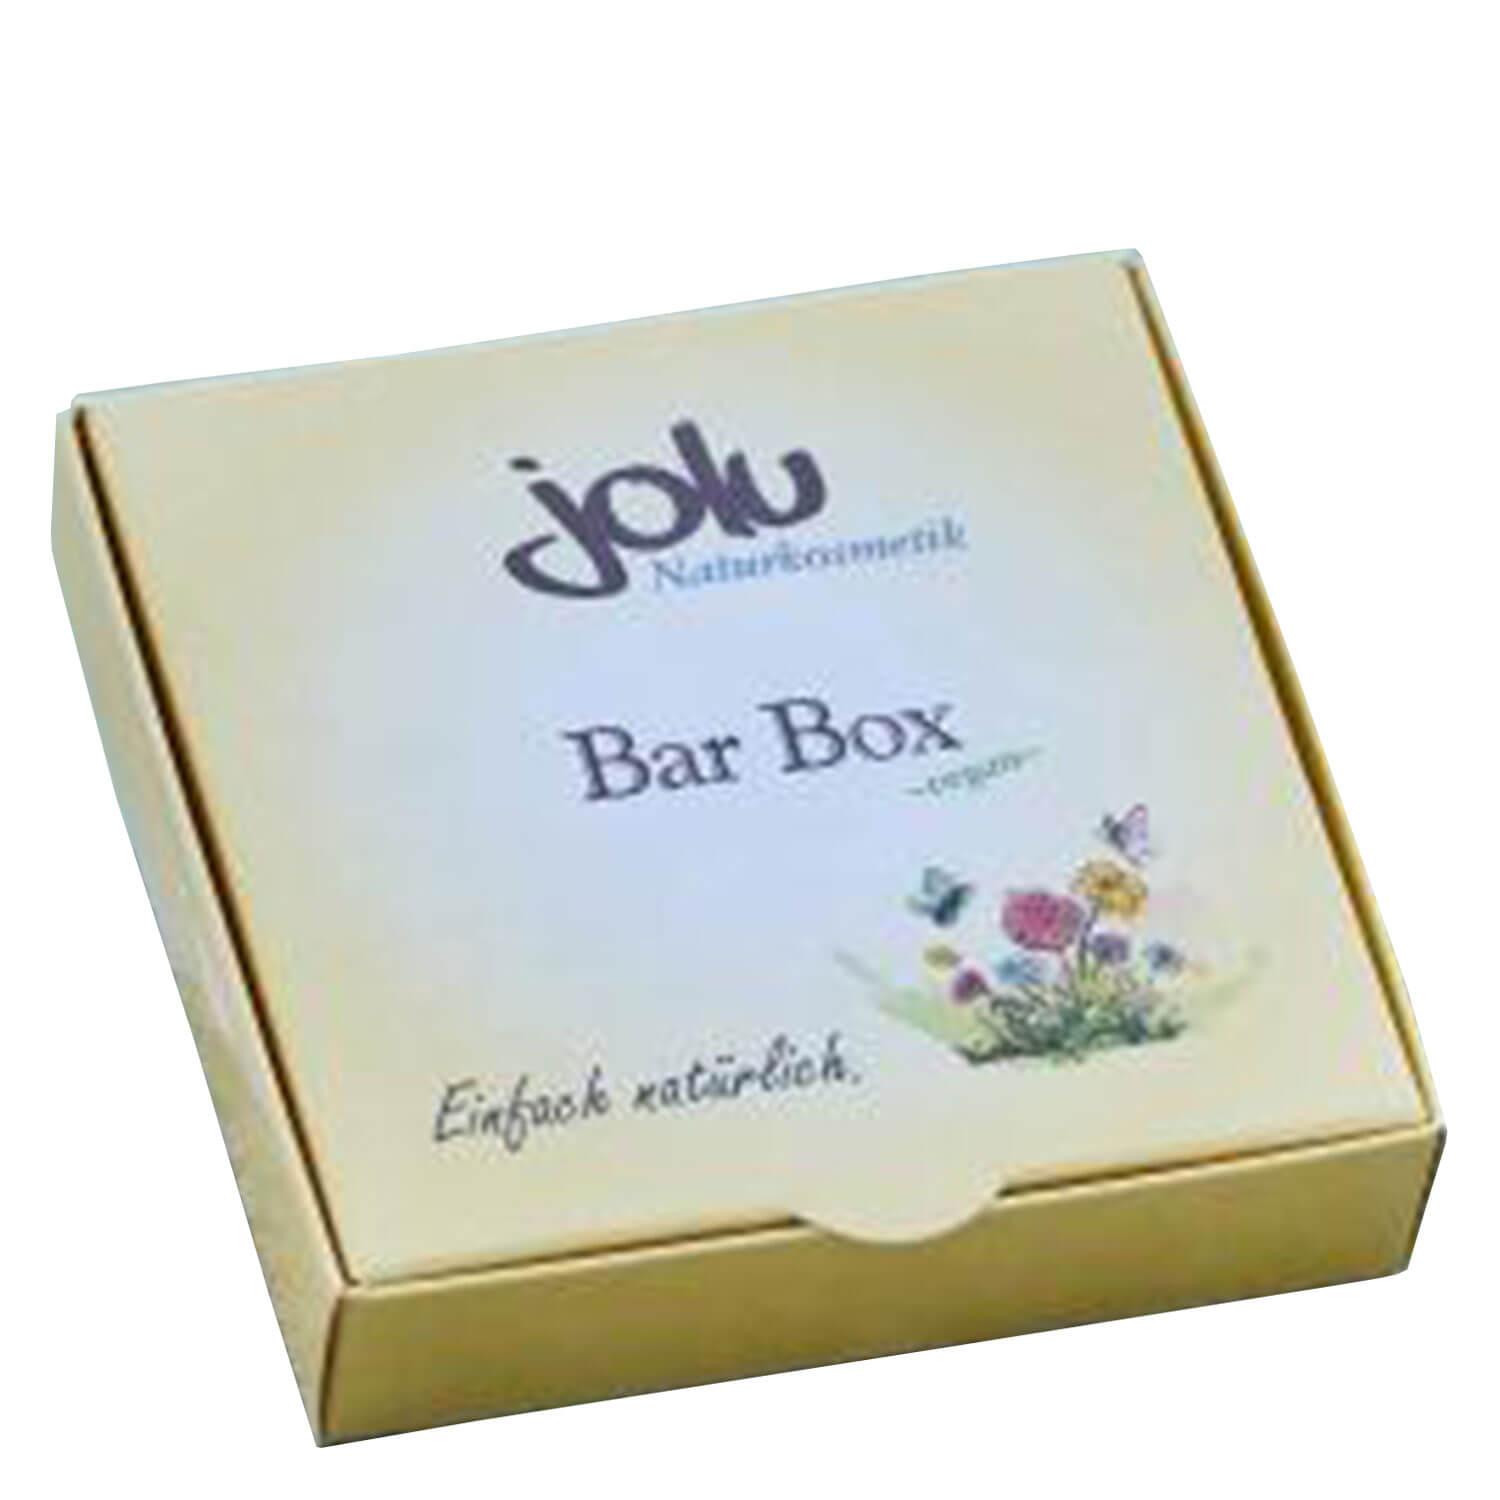 jolu - Bar Box